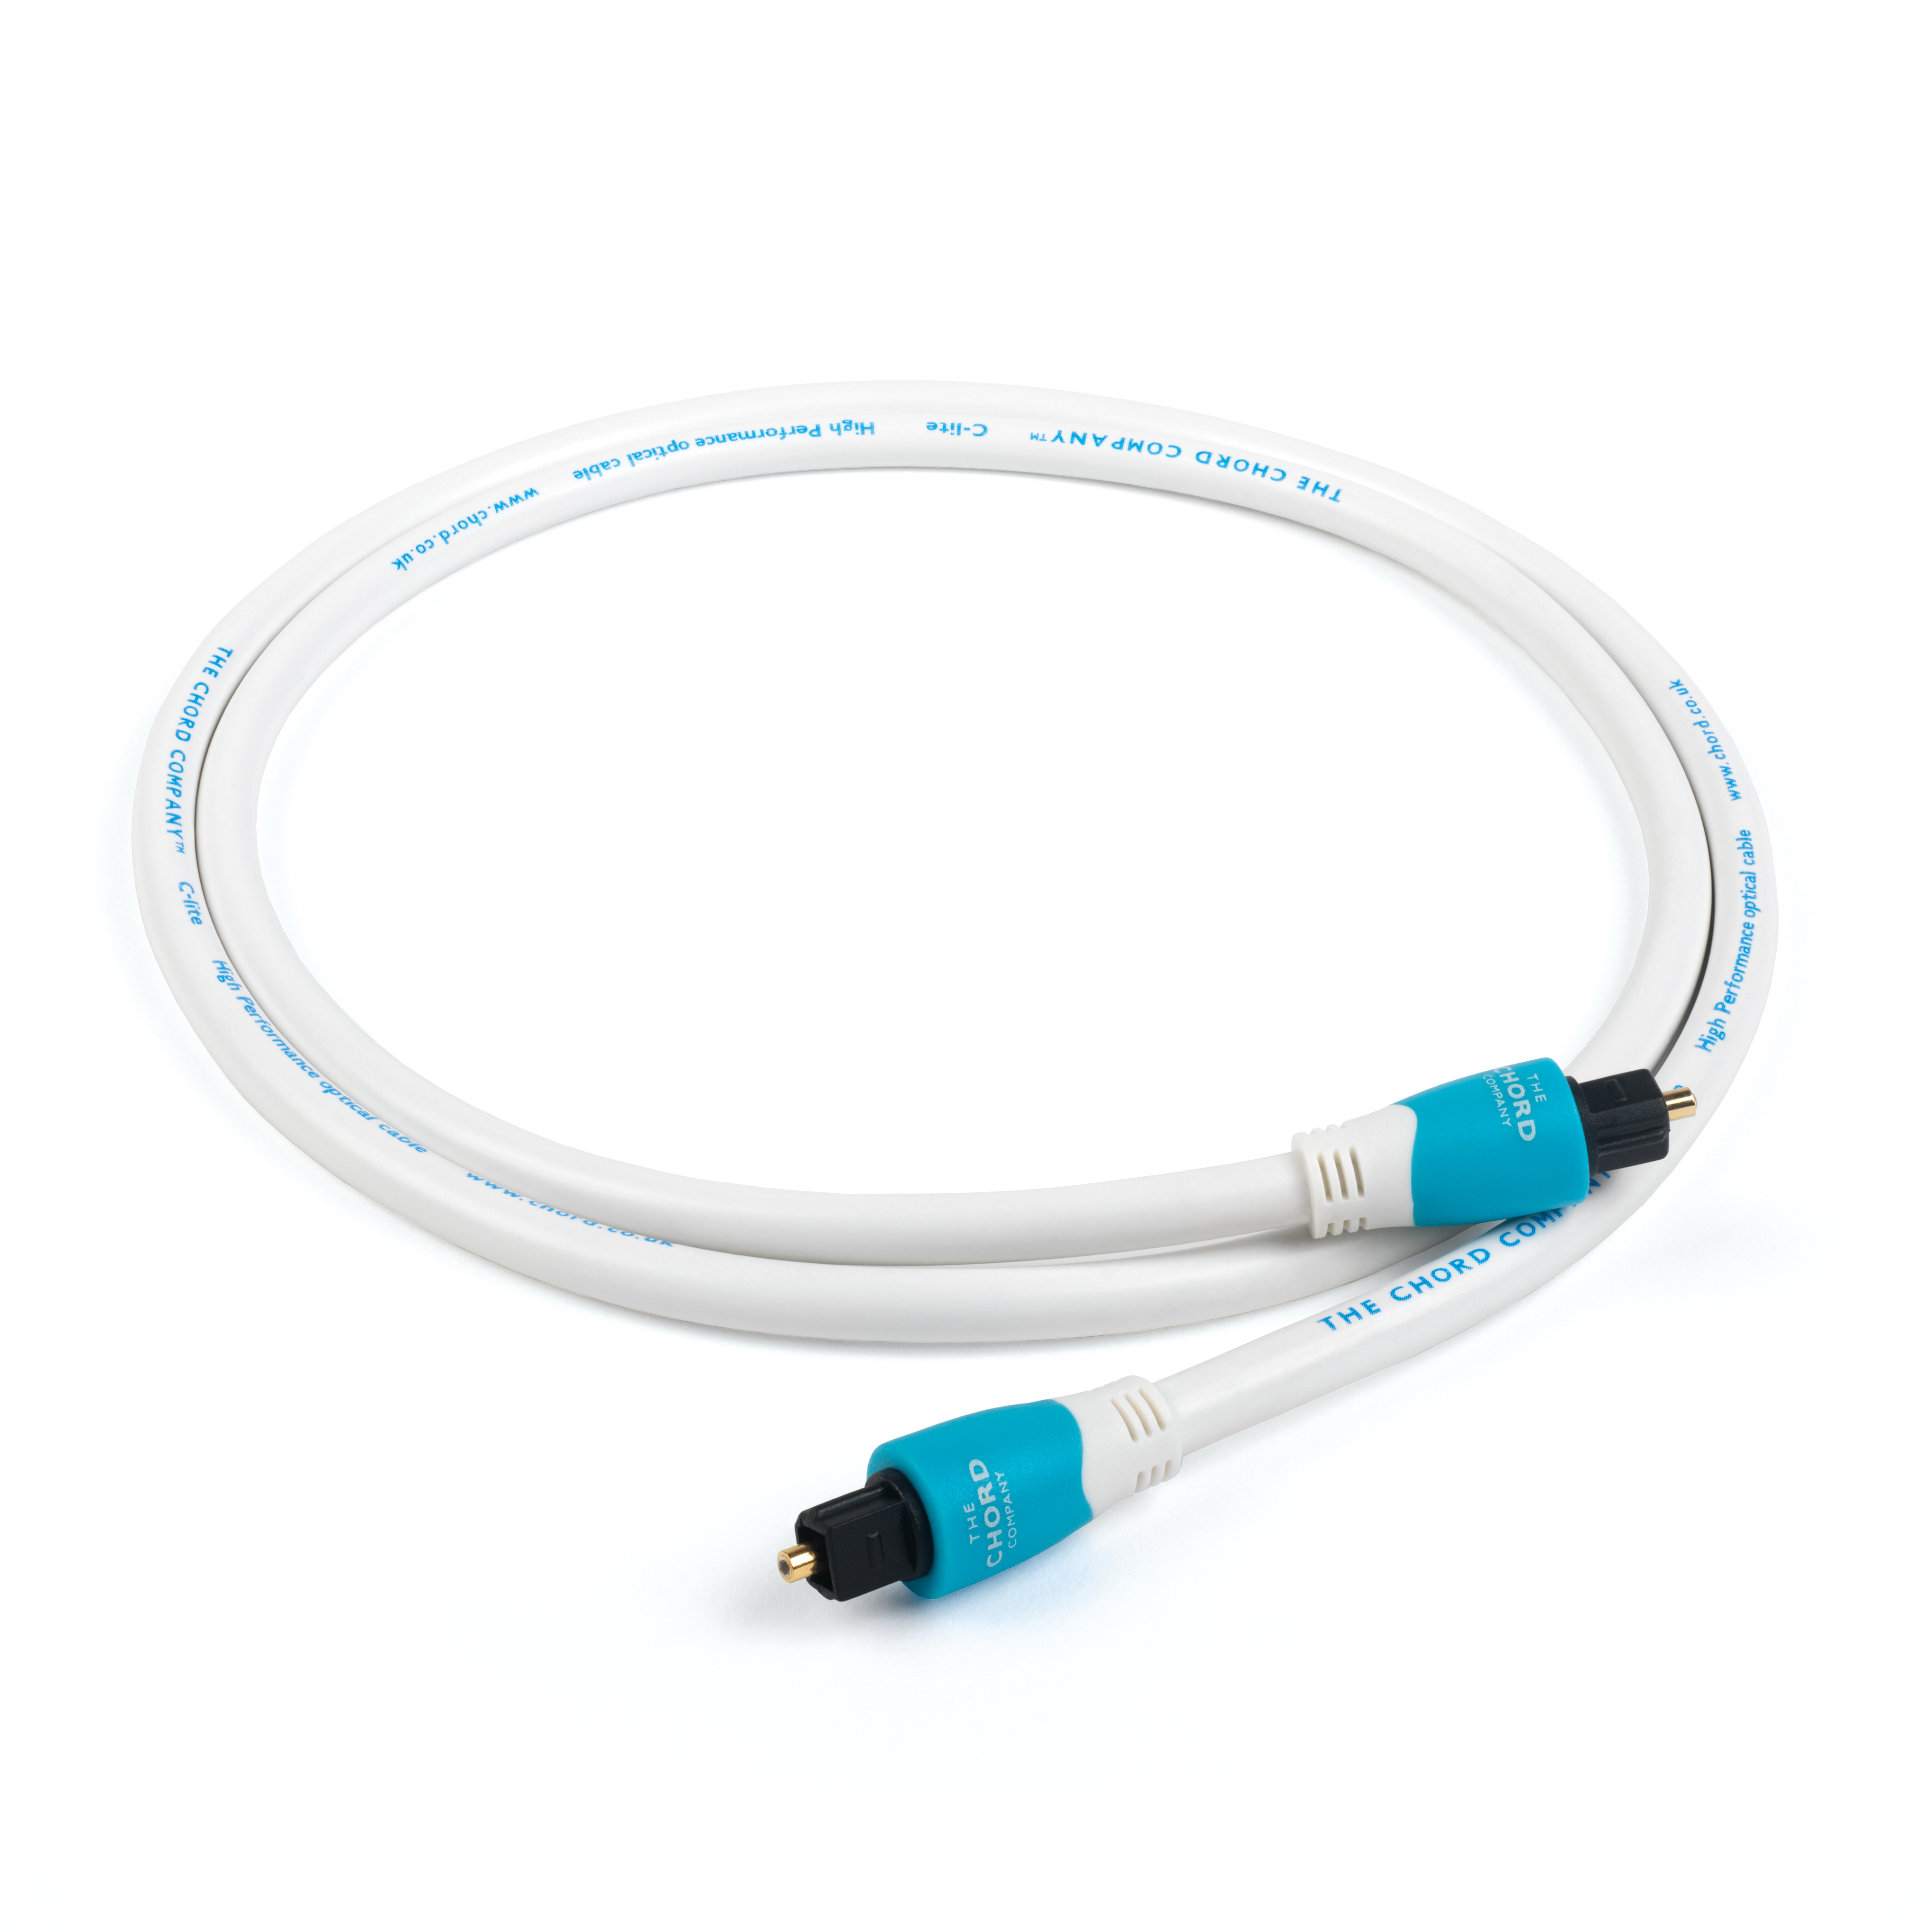 Chord C-Lite optische kabel